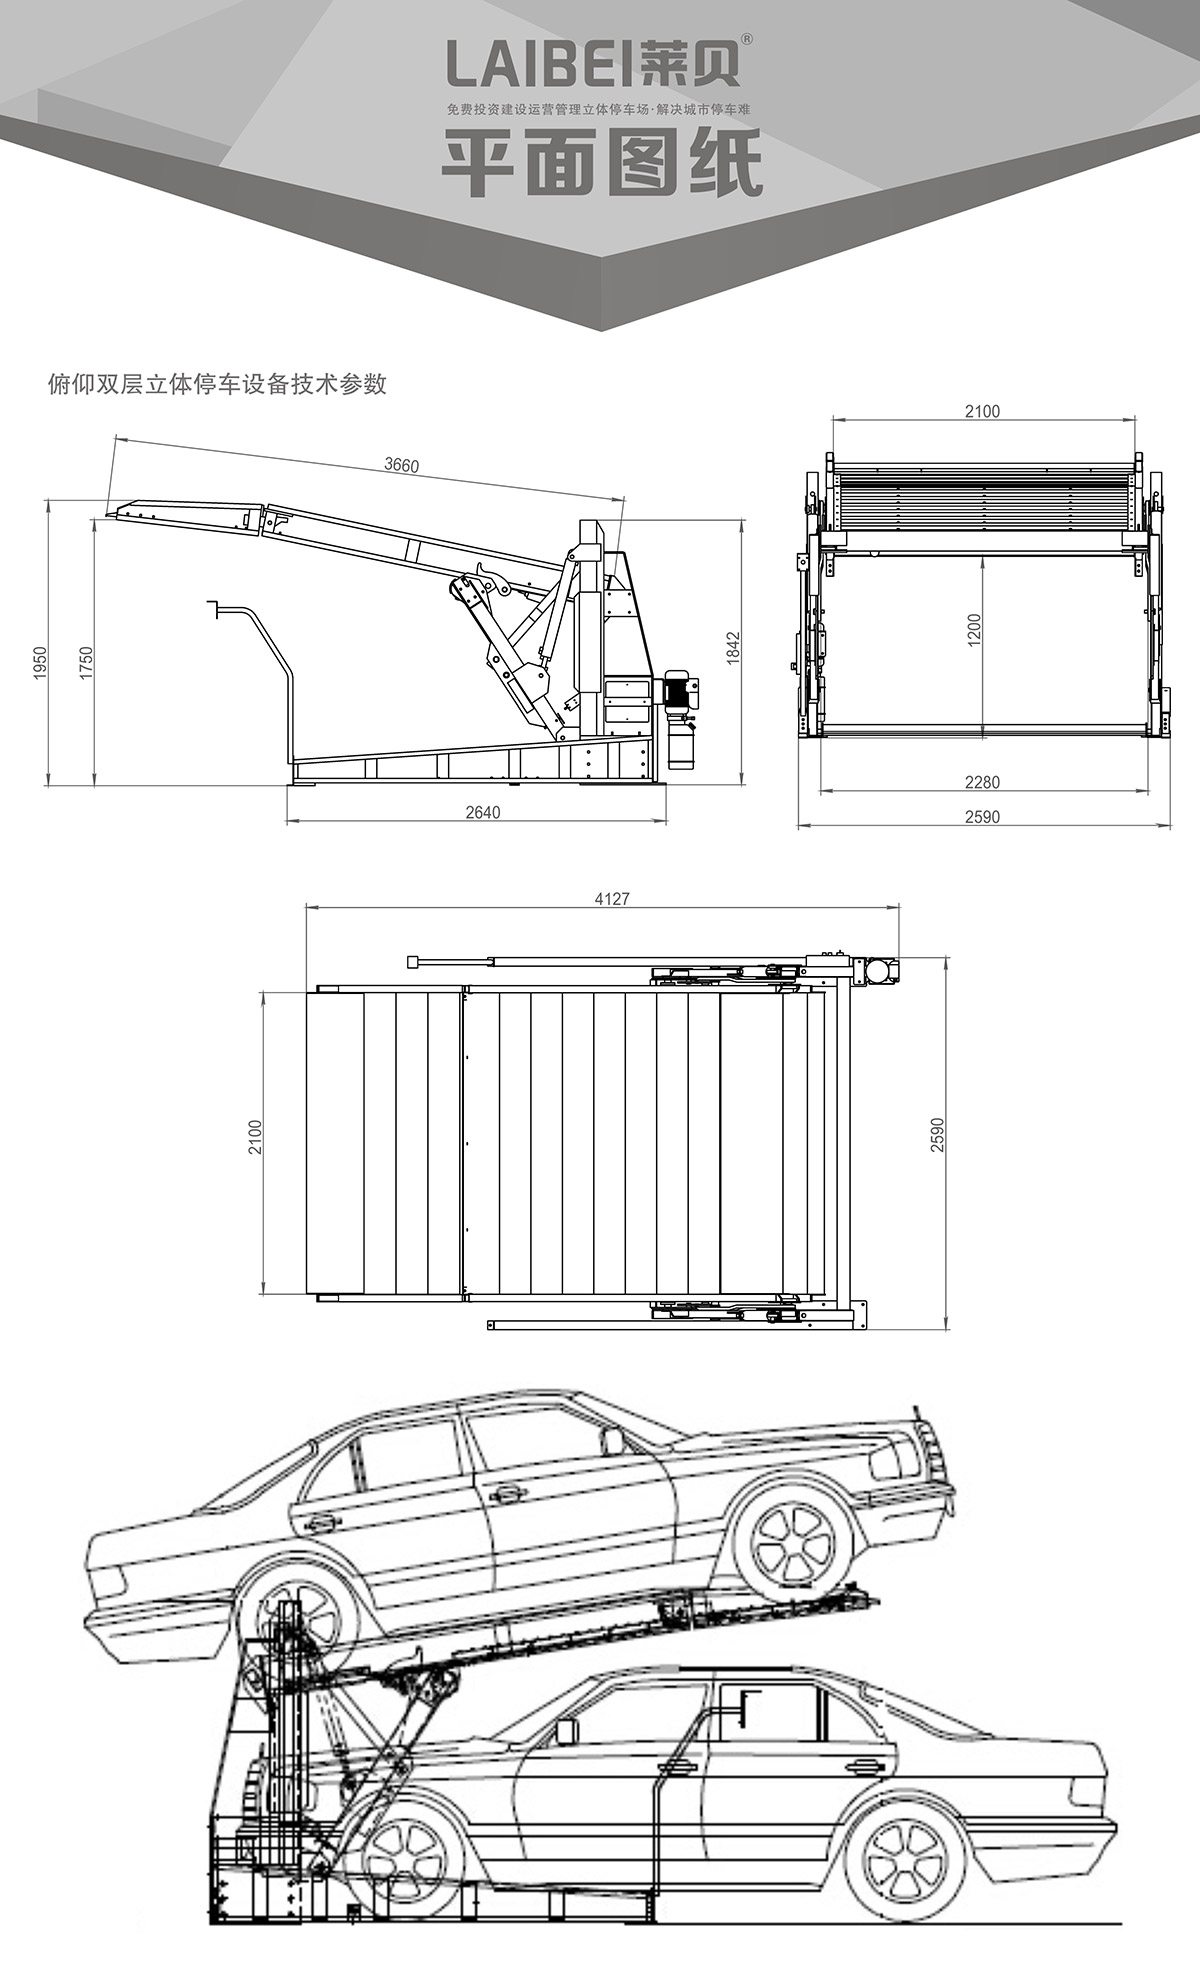 机械停车PJS俯仰简易升降立体车库设备平面图纸.jpg